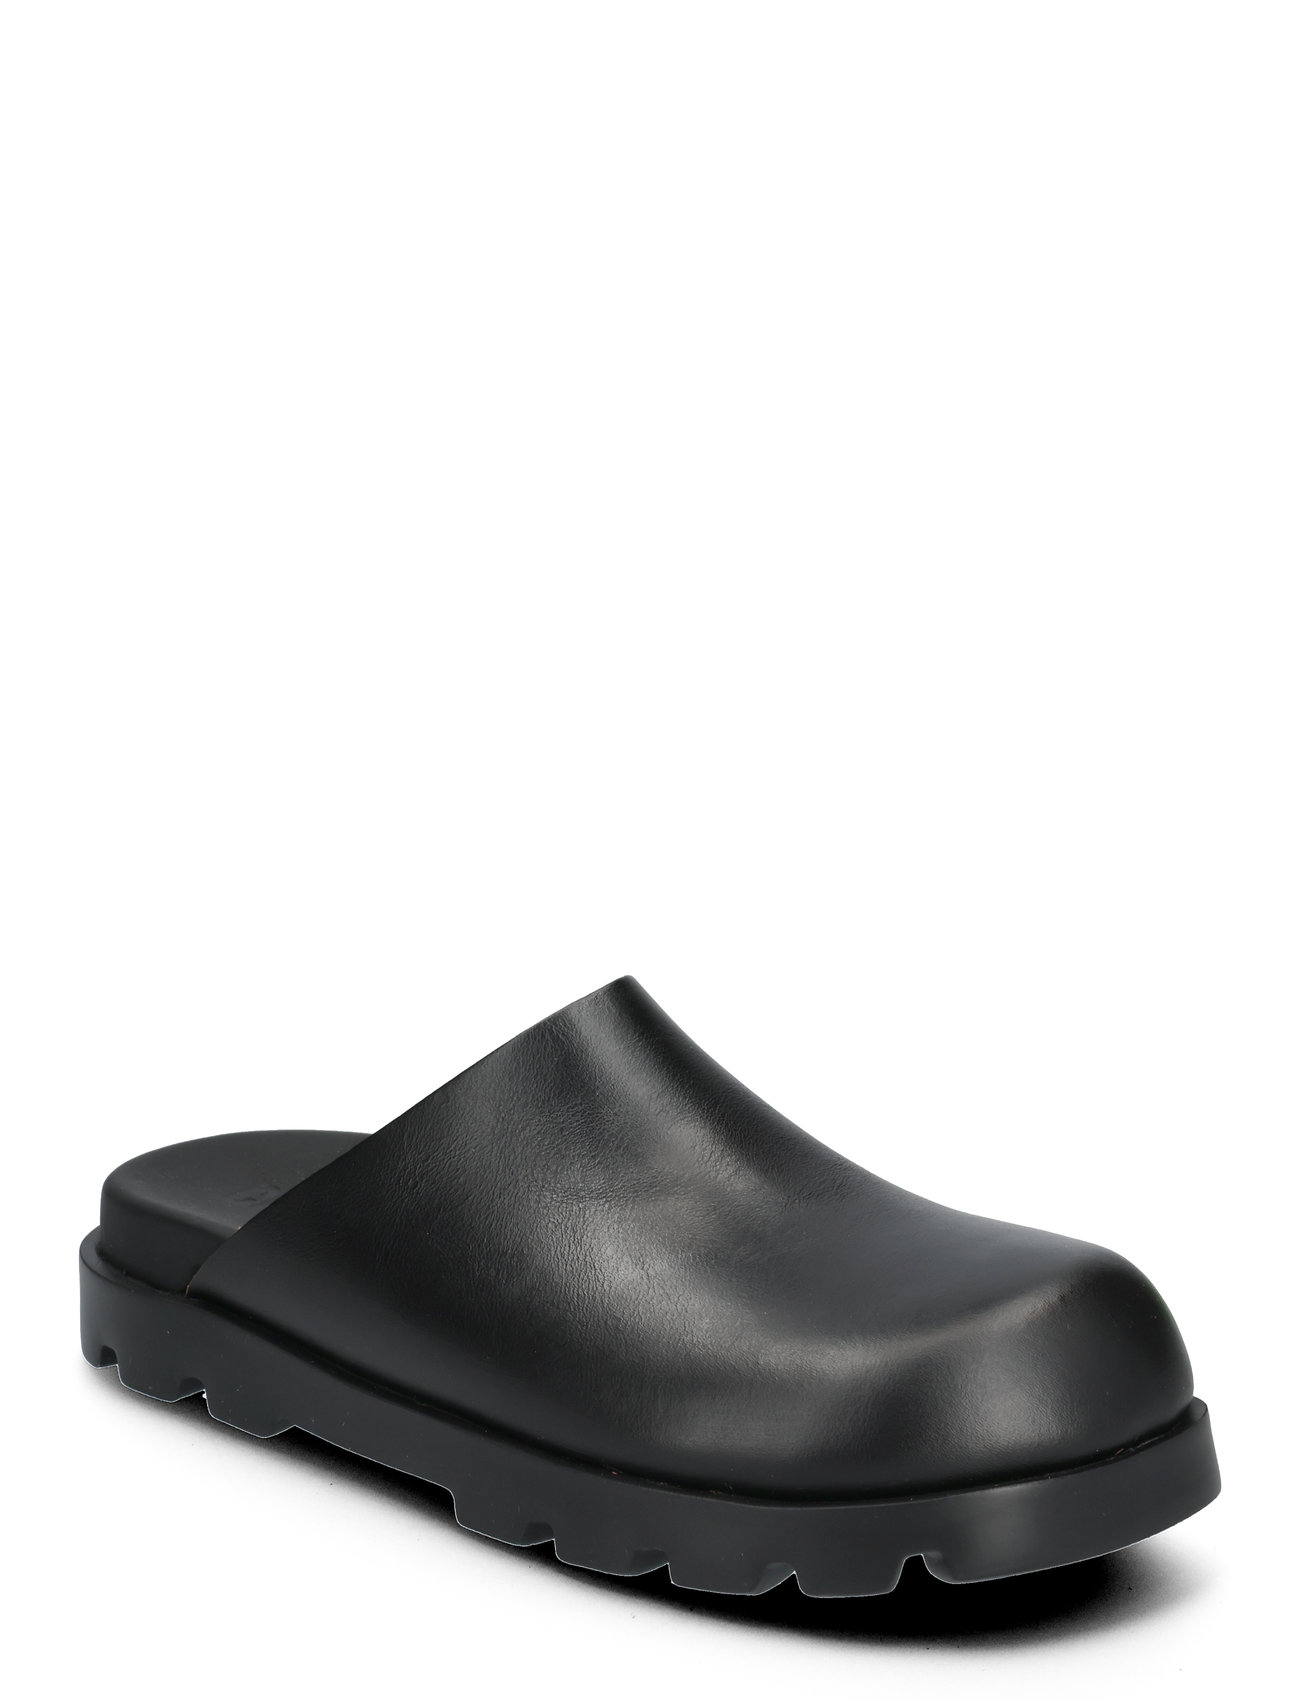 Brutus Sandal Shoes Clogs Black Camper